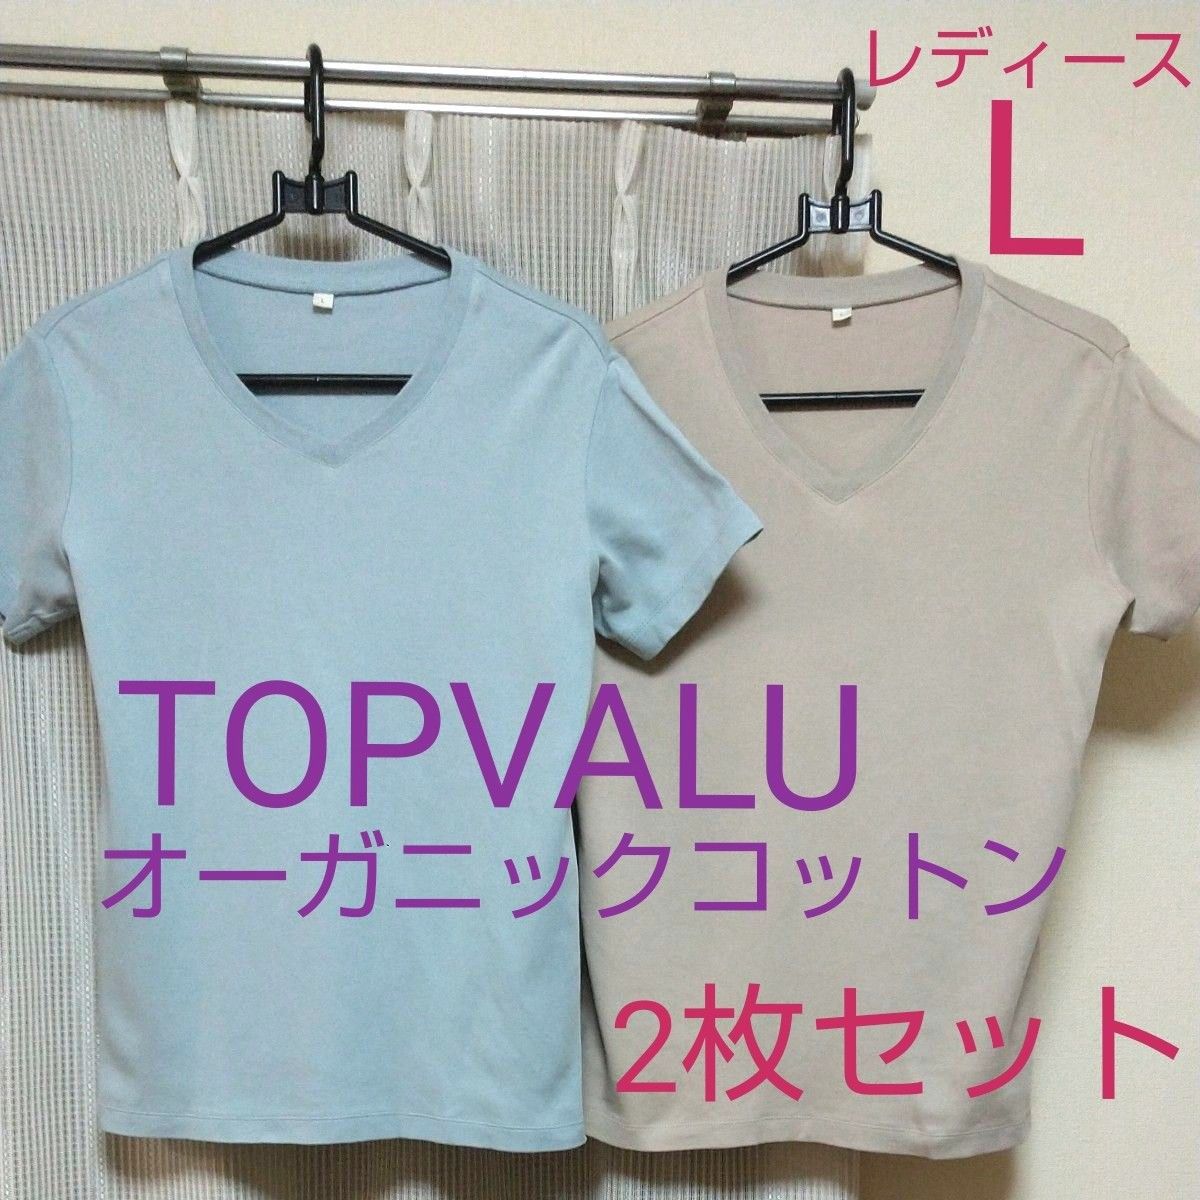 ★TOPVALU★イオン トップバリュ レディース Lサイズ オーガニックコットン 100% 半袖 Vネック Tシャツ 2枚セット